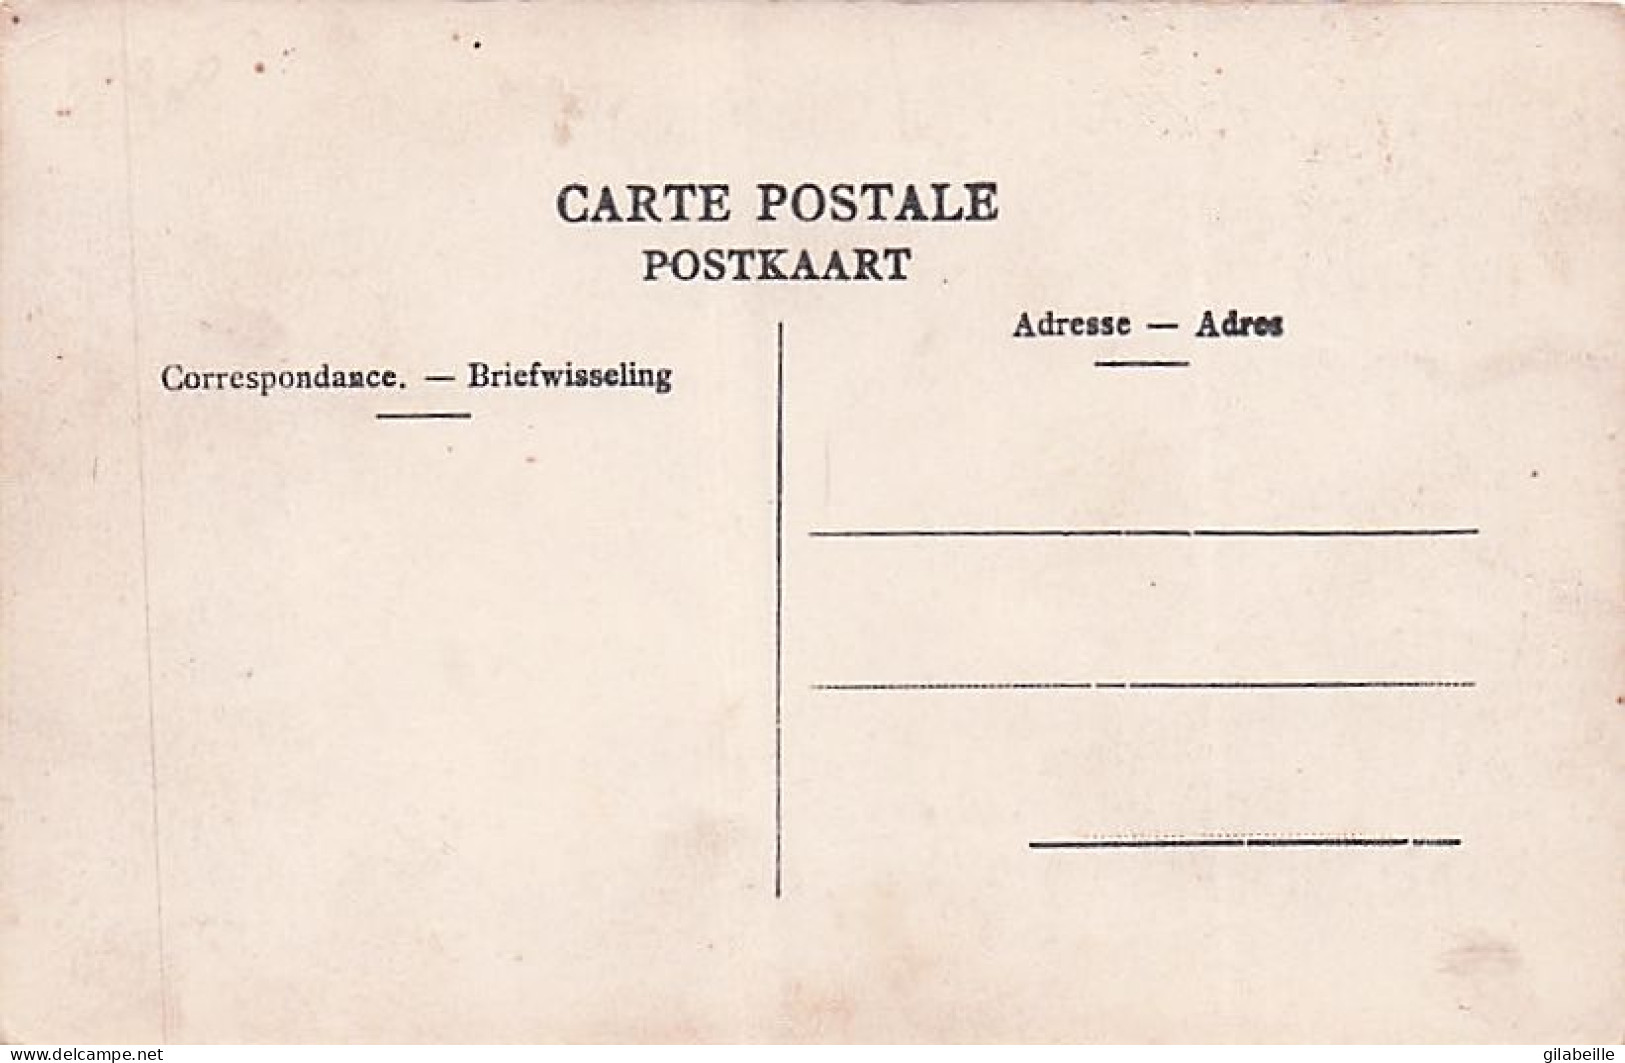 ASSE - ASSCHE - 600 Jarige Jubelfeesten Der Mirakuleuze Kruis ( Juni 1912 ) - Asse